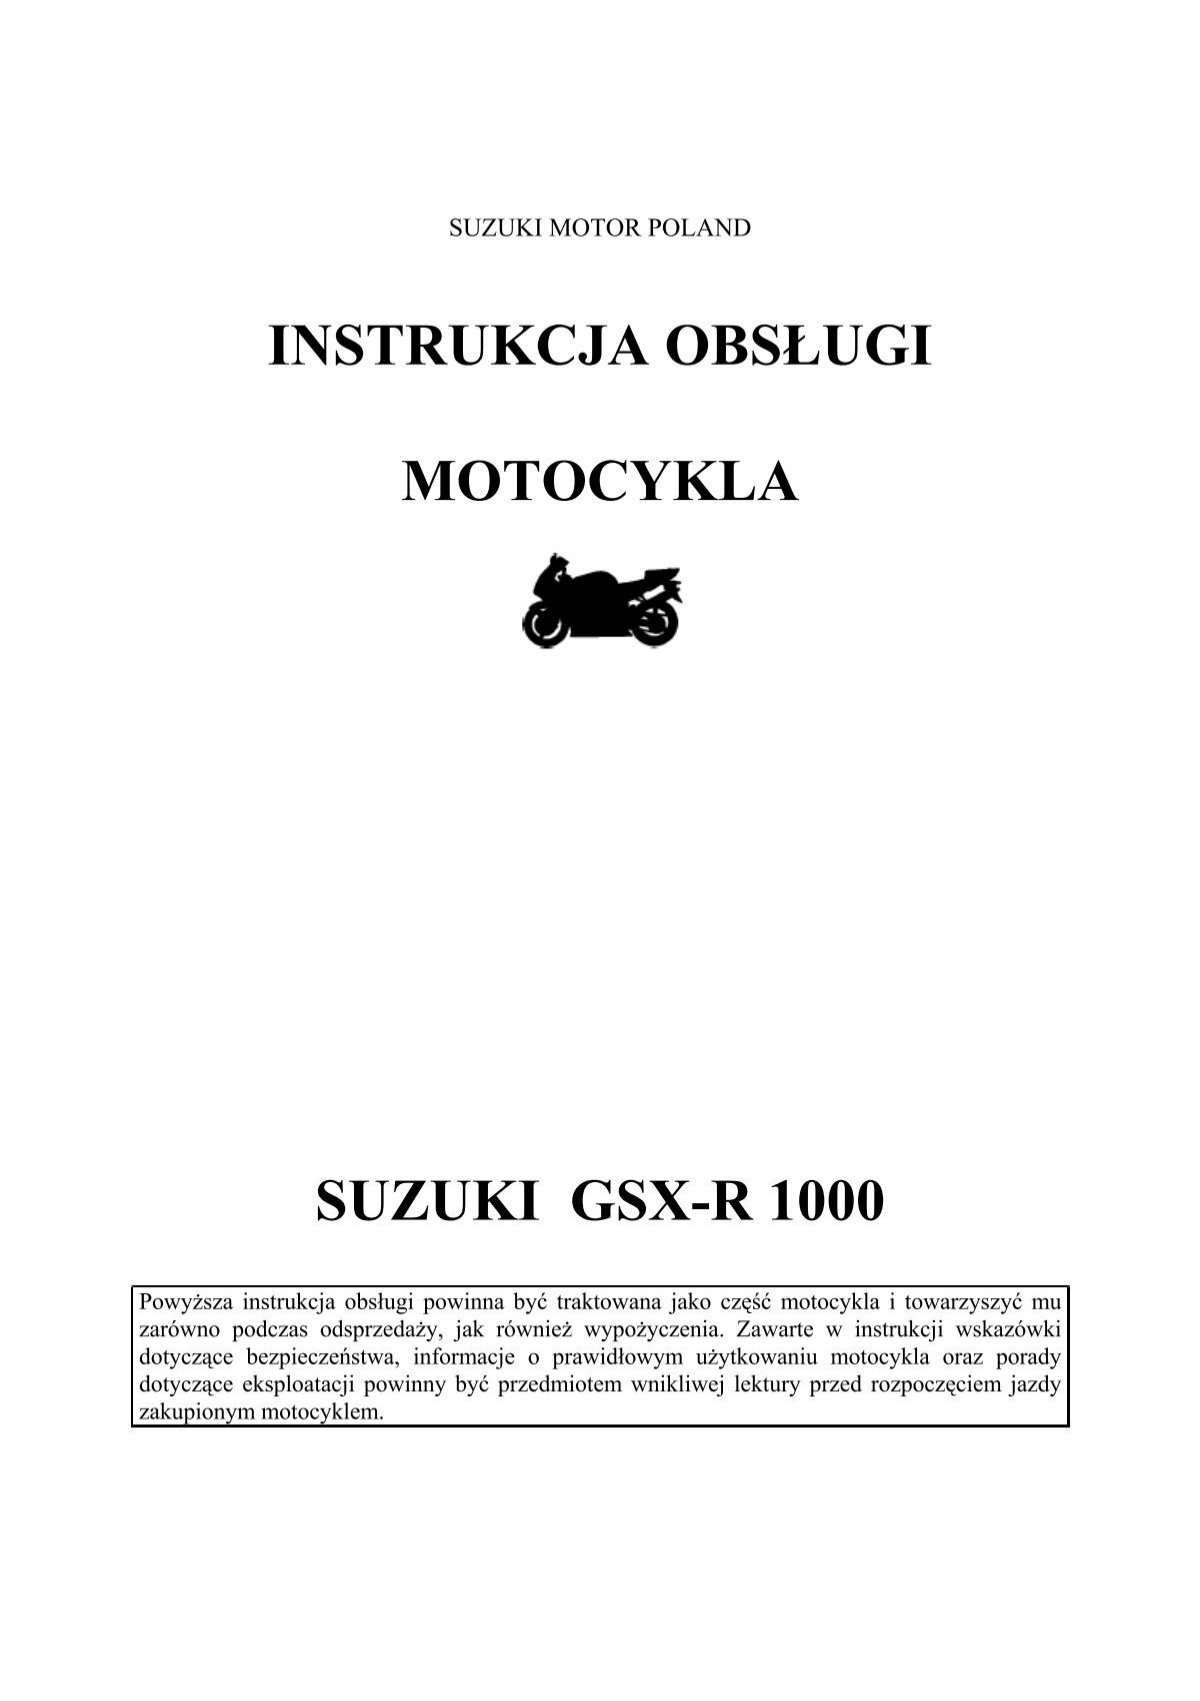 Instrukcja Obsługi Motocykla Suzuki Gsx-R 1000 - Suzuki Motor Poland